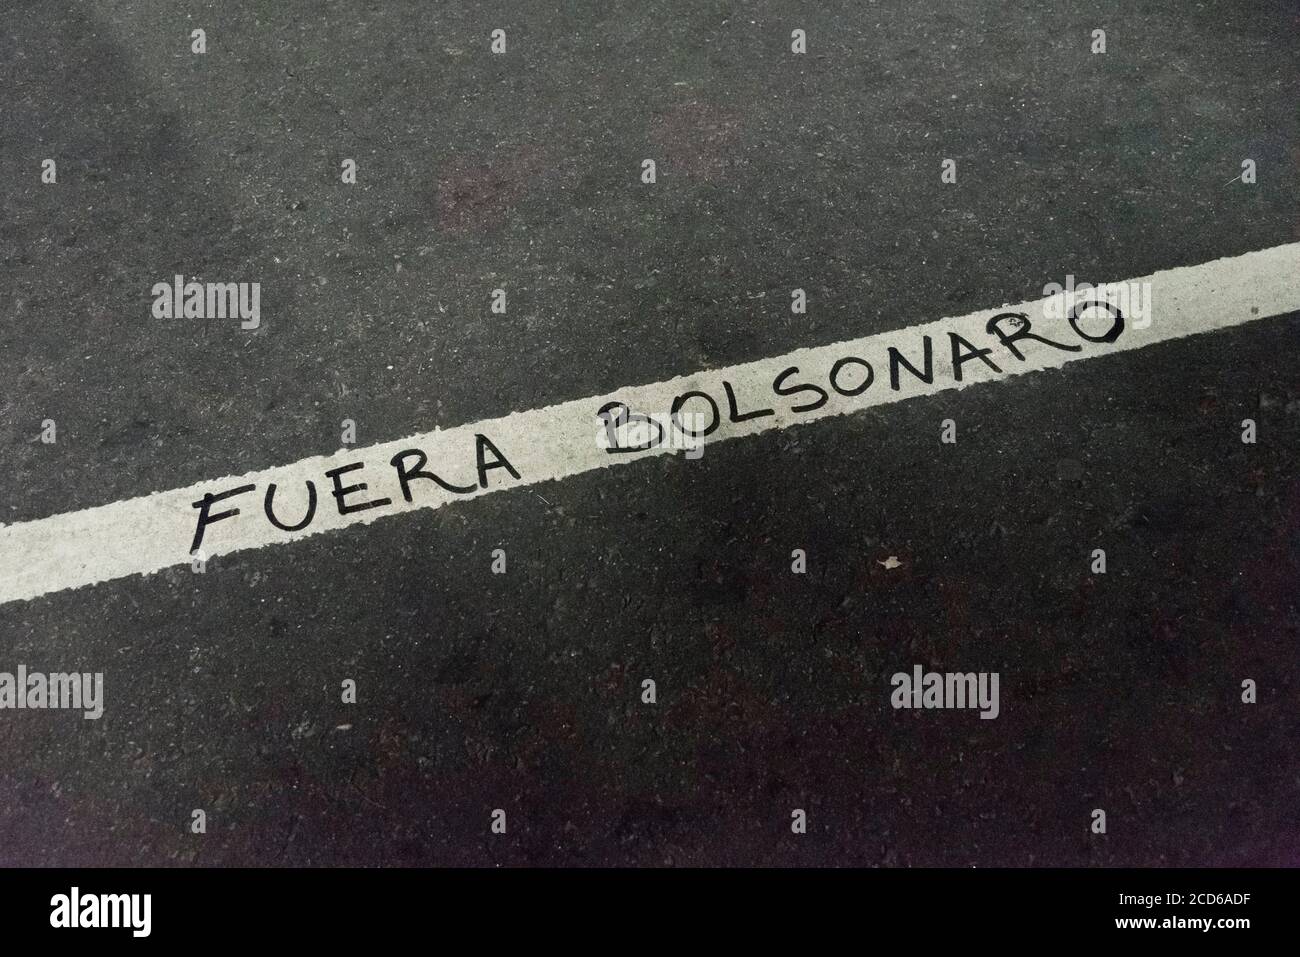 CABA, Buenos Aires / Argentinien; 23. Aug 2019: Text geschrieben auf der Straße, raus, Bolsonaro. Protest für den Schutz des Amazonas und gegen Bra Stockfoto